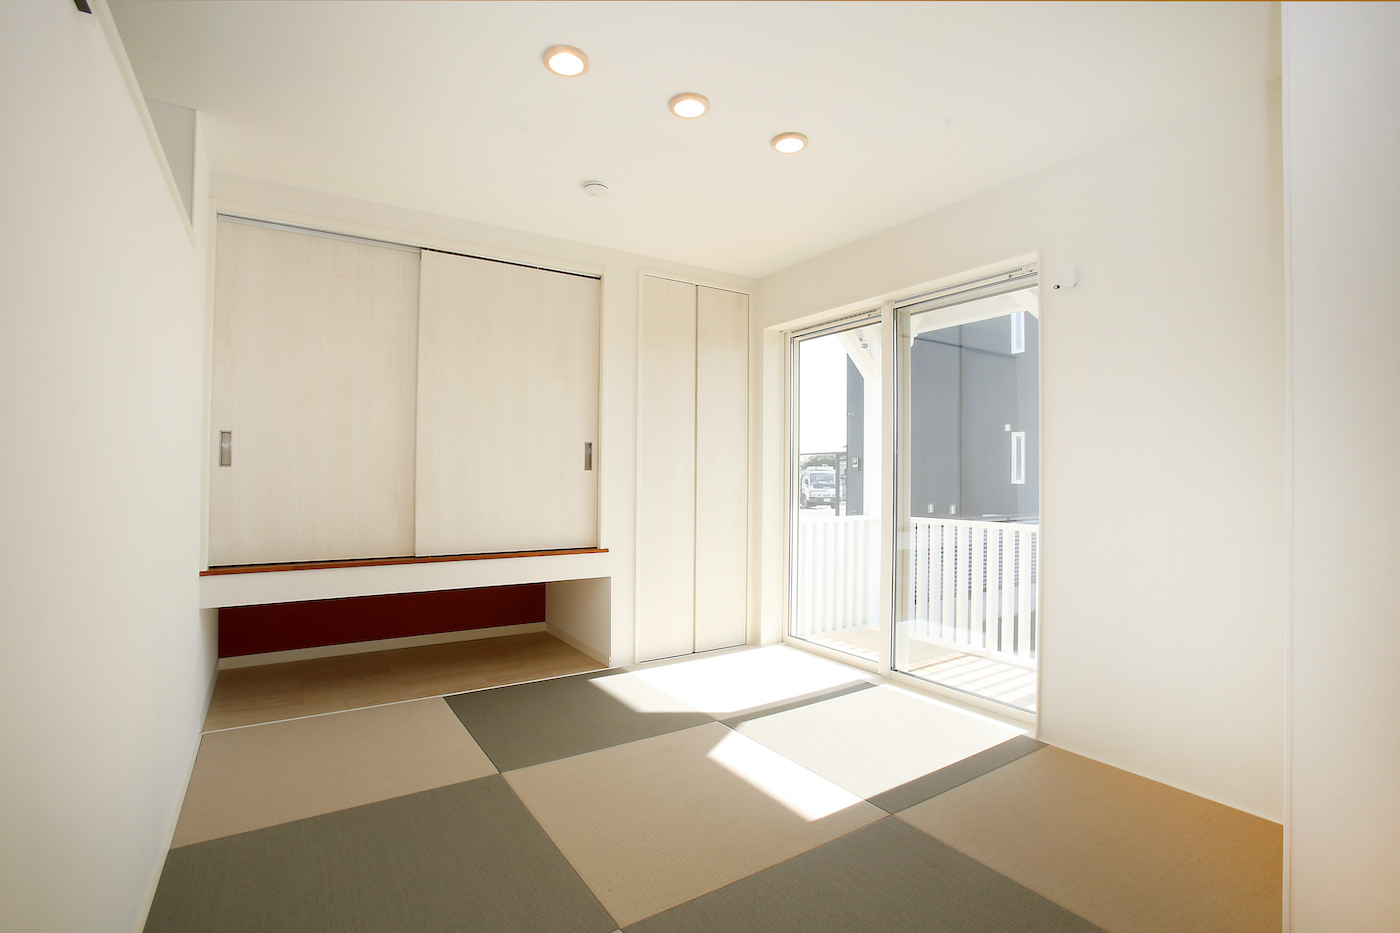 【小上がり】2色の琉球畳を使った小上がりの畳部屋。